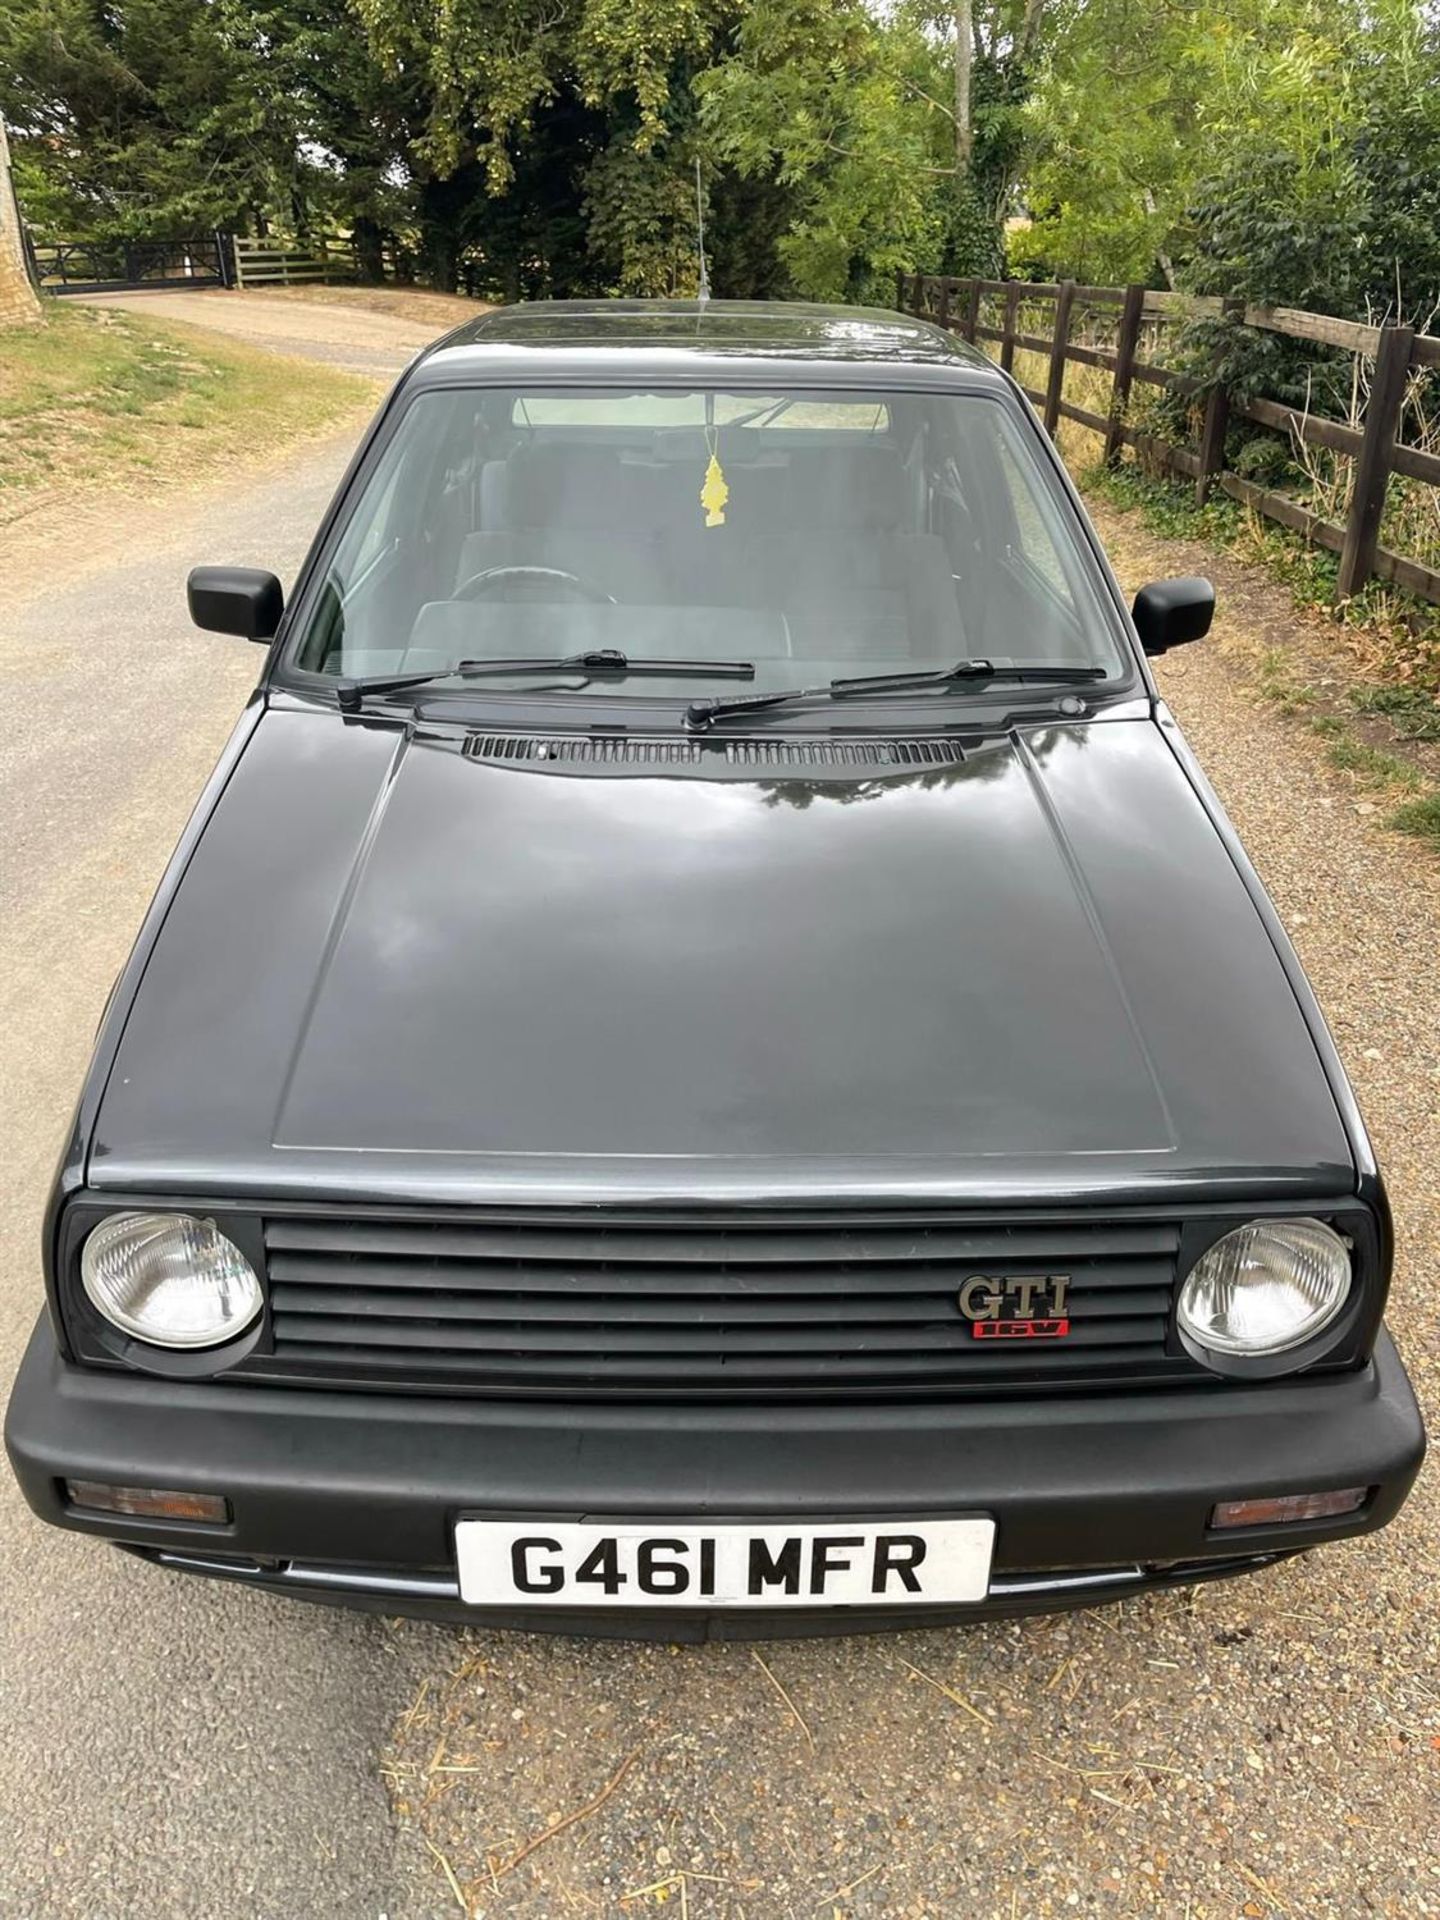 1990 Volkswagen Golf Mk2 GTi 16V - Image 6 of 10